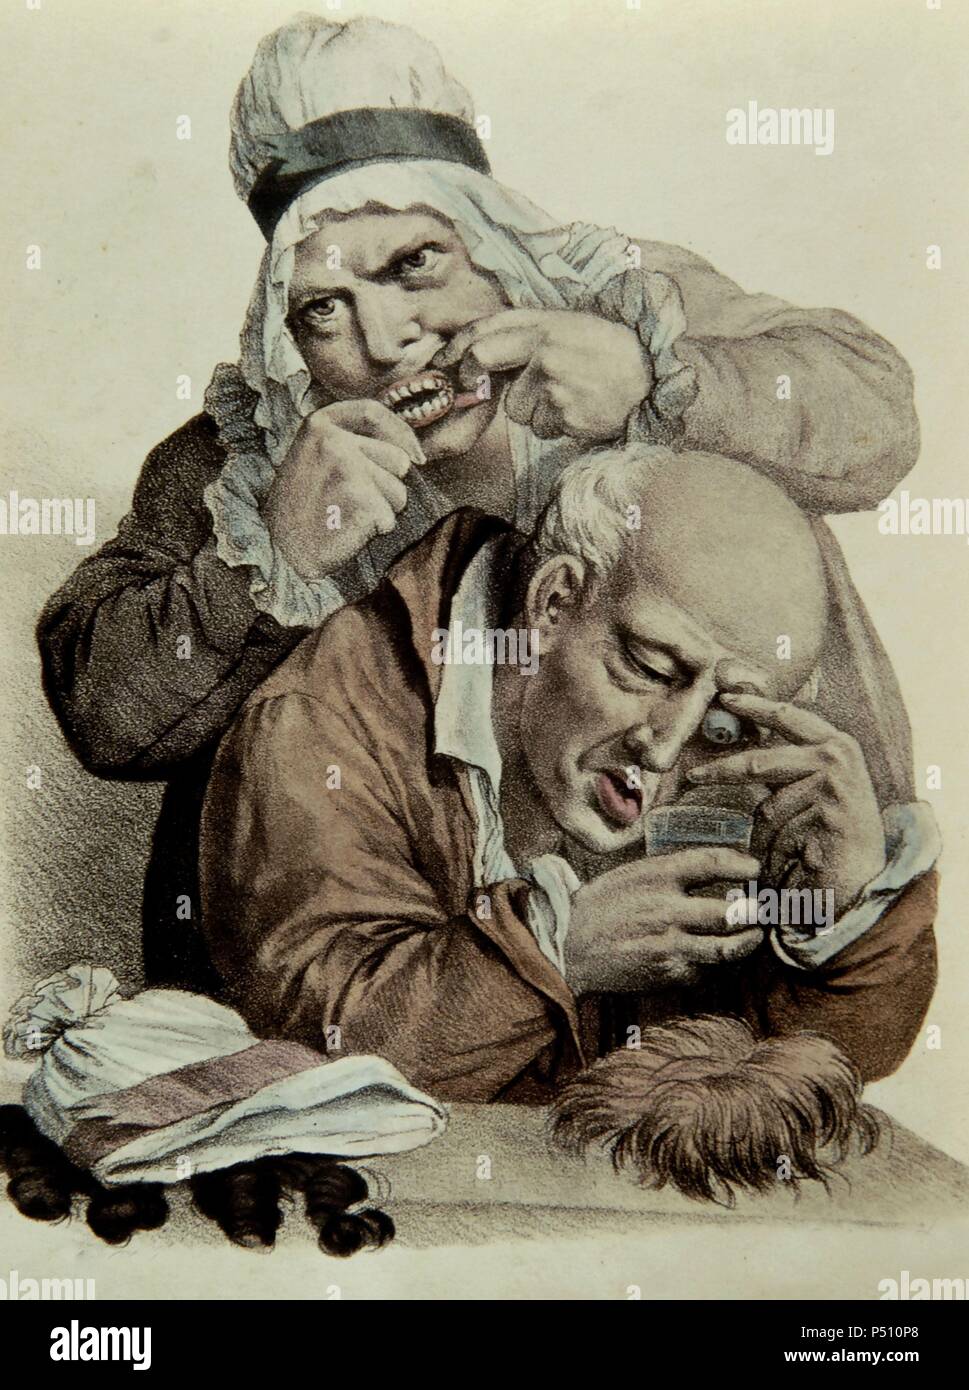 HISTORIA DE LA MEDICINA. SIGLO XIX. ODONTOLOGIA. Ojo y dentadura postiza. Grabado coloreado. París, 1825. Stock Photo